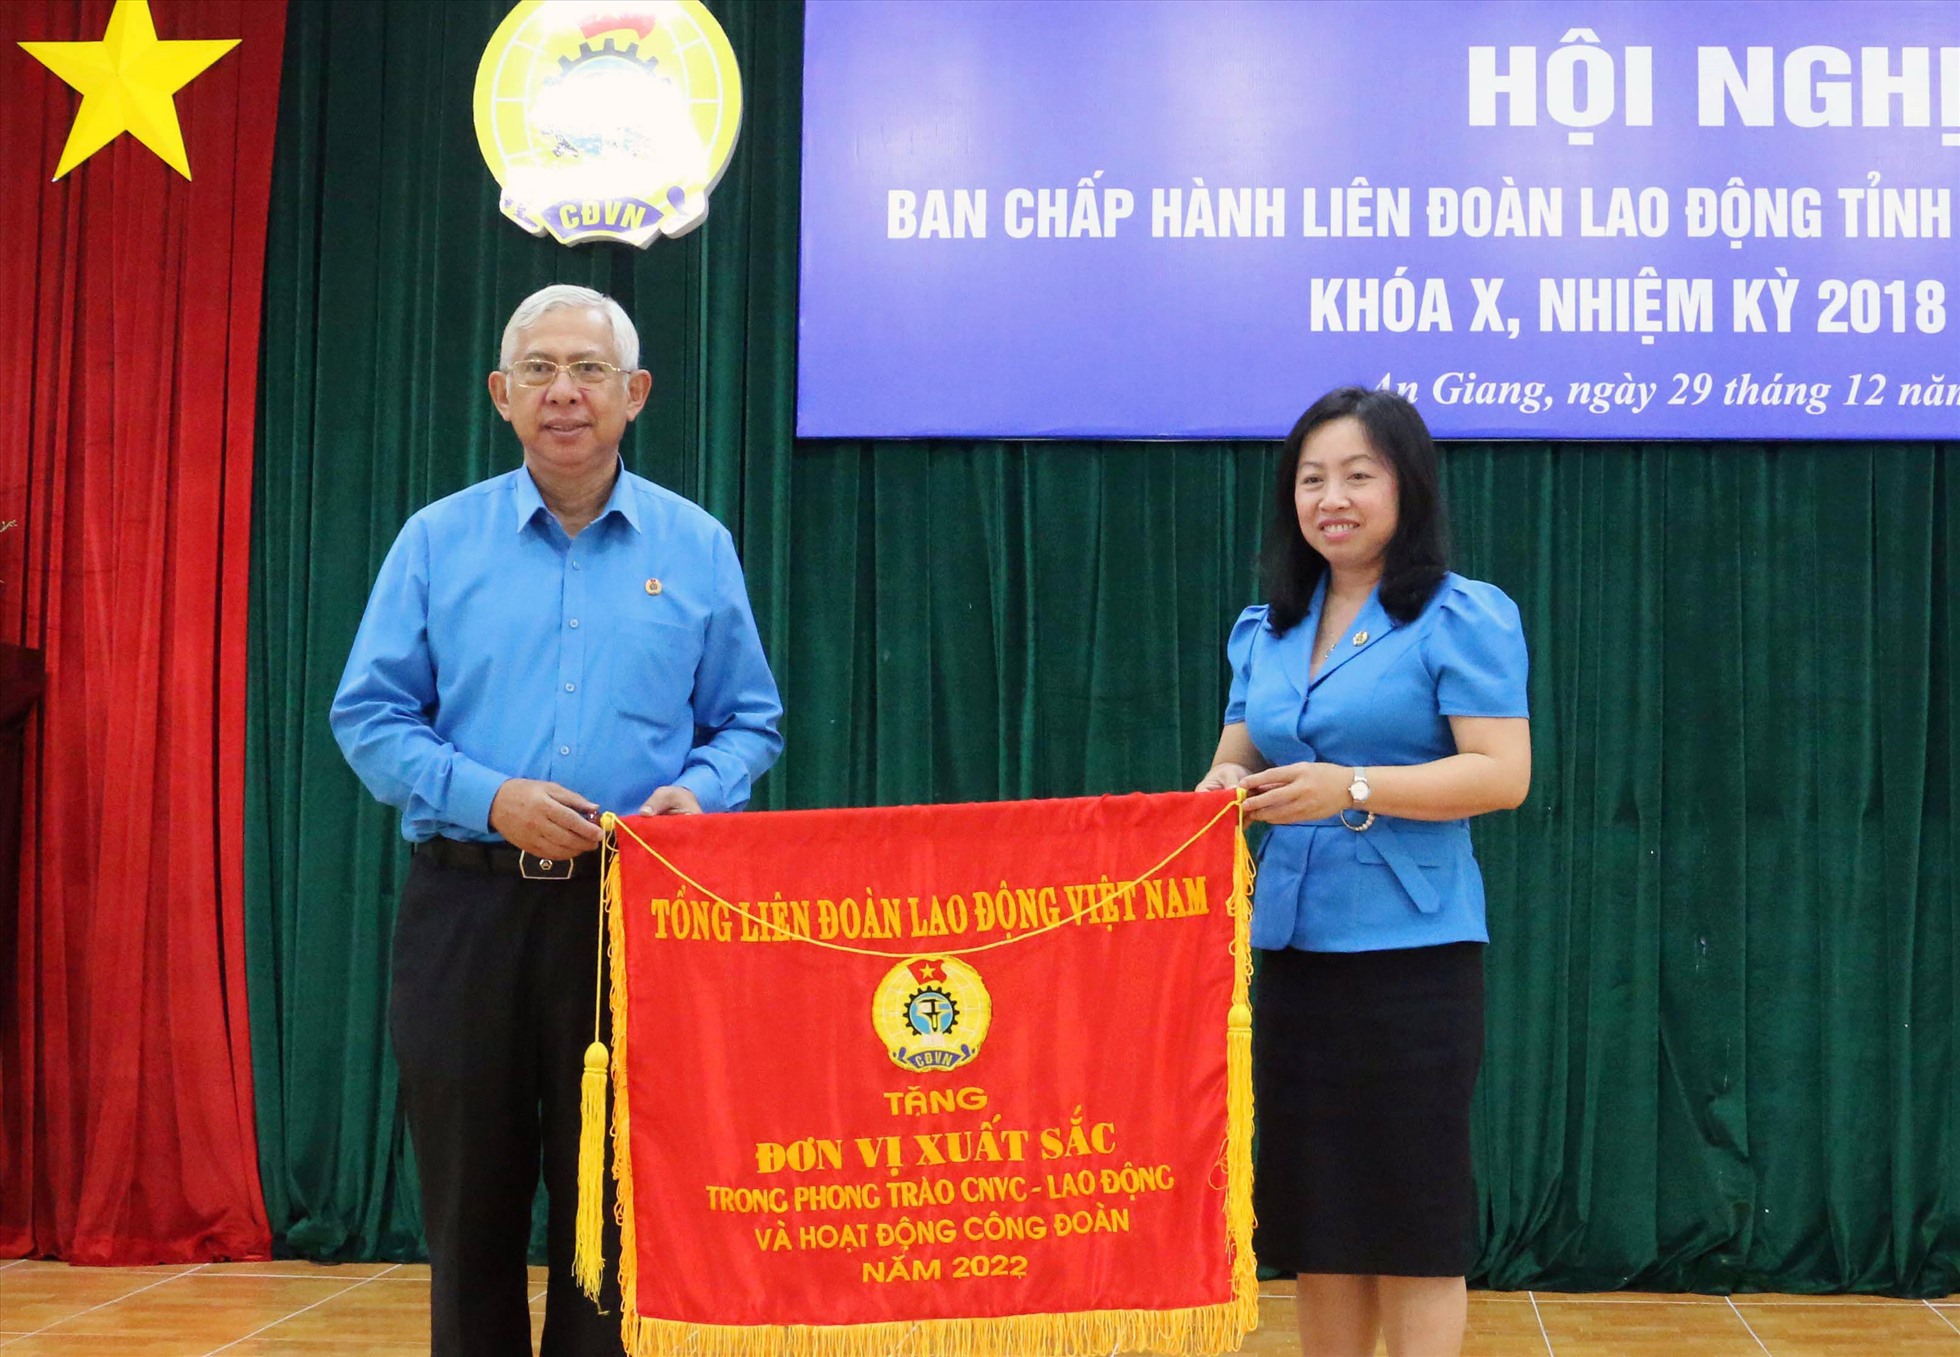 Phó Chủ tịch Tổng LĐLĐ VN Thái Thu Xương trao Cờ thi đua Đơn vị xuất sắc trong phong trào CNVCLĐ và hoạt động Công đoàn năm 2022. Ảnh: Lục Tùng